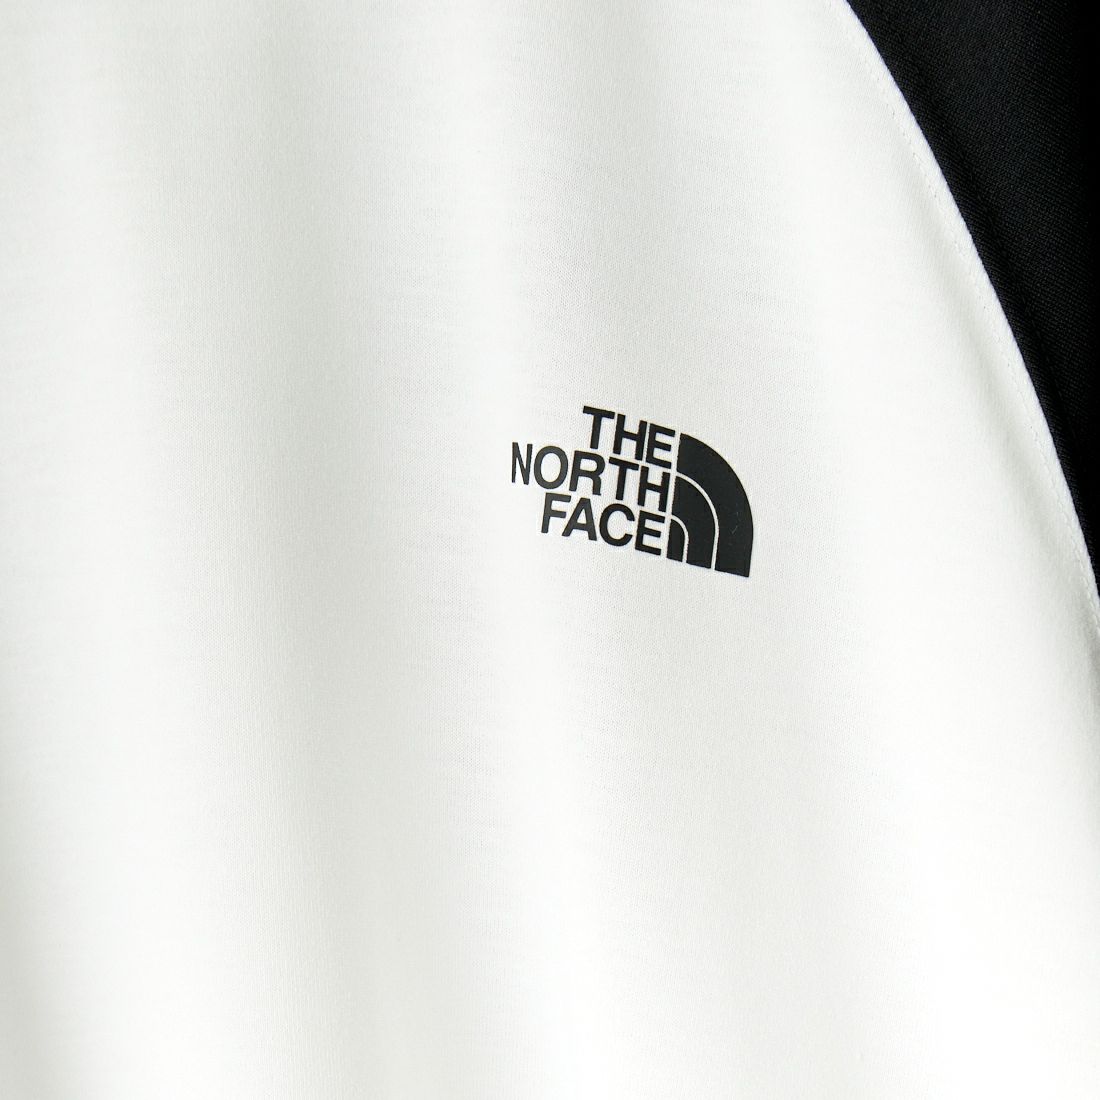 THE NORTH FACE [ザ ノースフェイス] クォータースリーブベースボールTシャツ [NT32476]